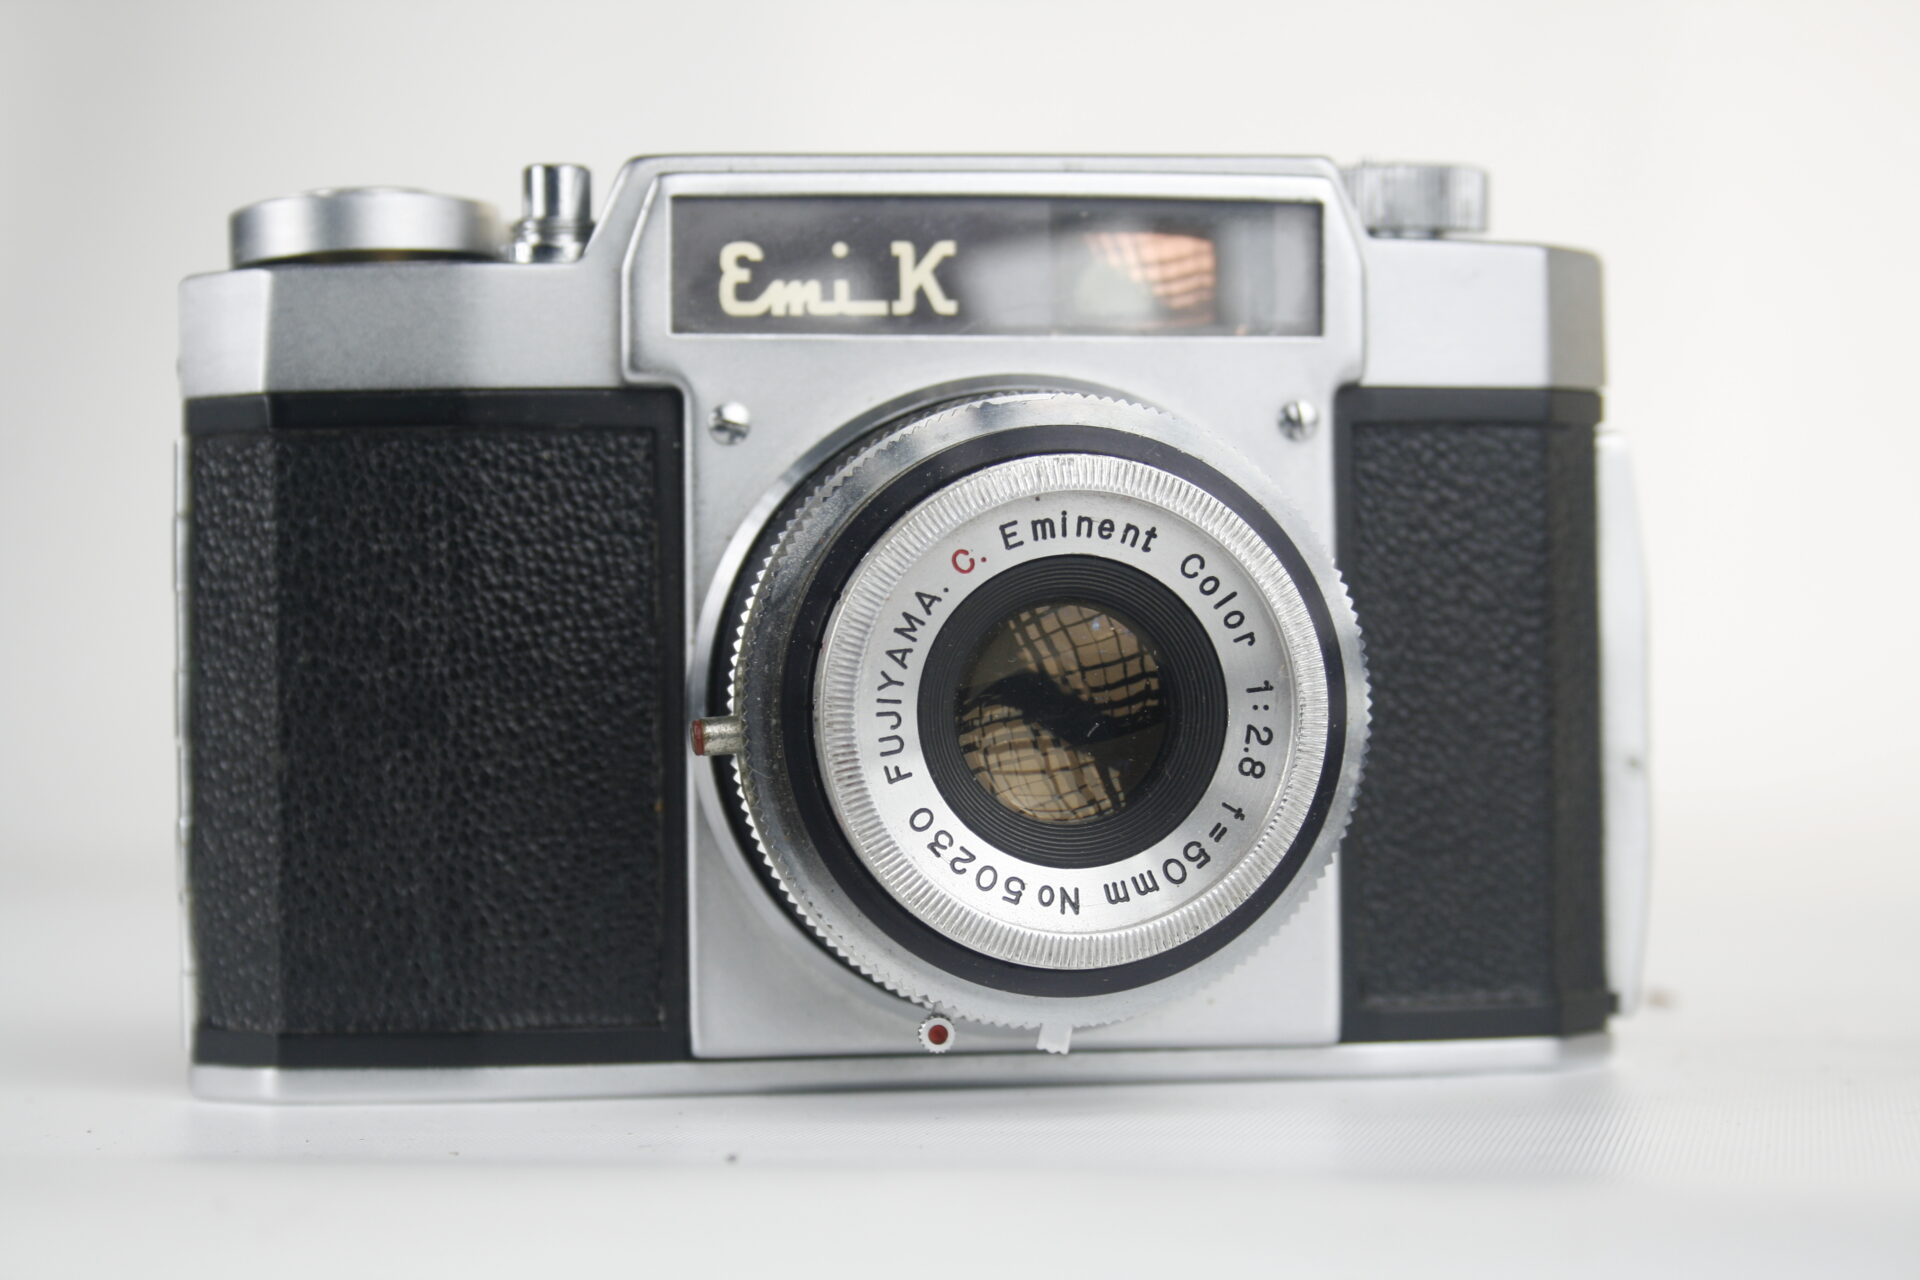 Emi K viewfinder camera. 35mm film. 1956. Japan.